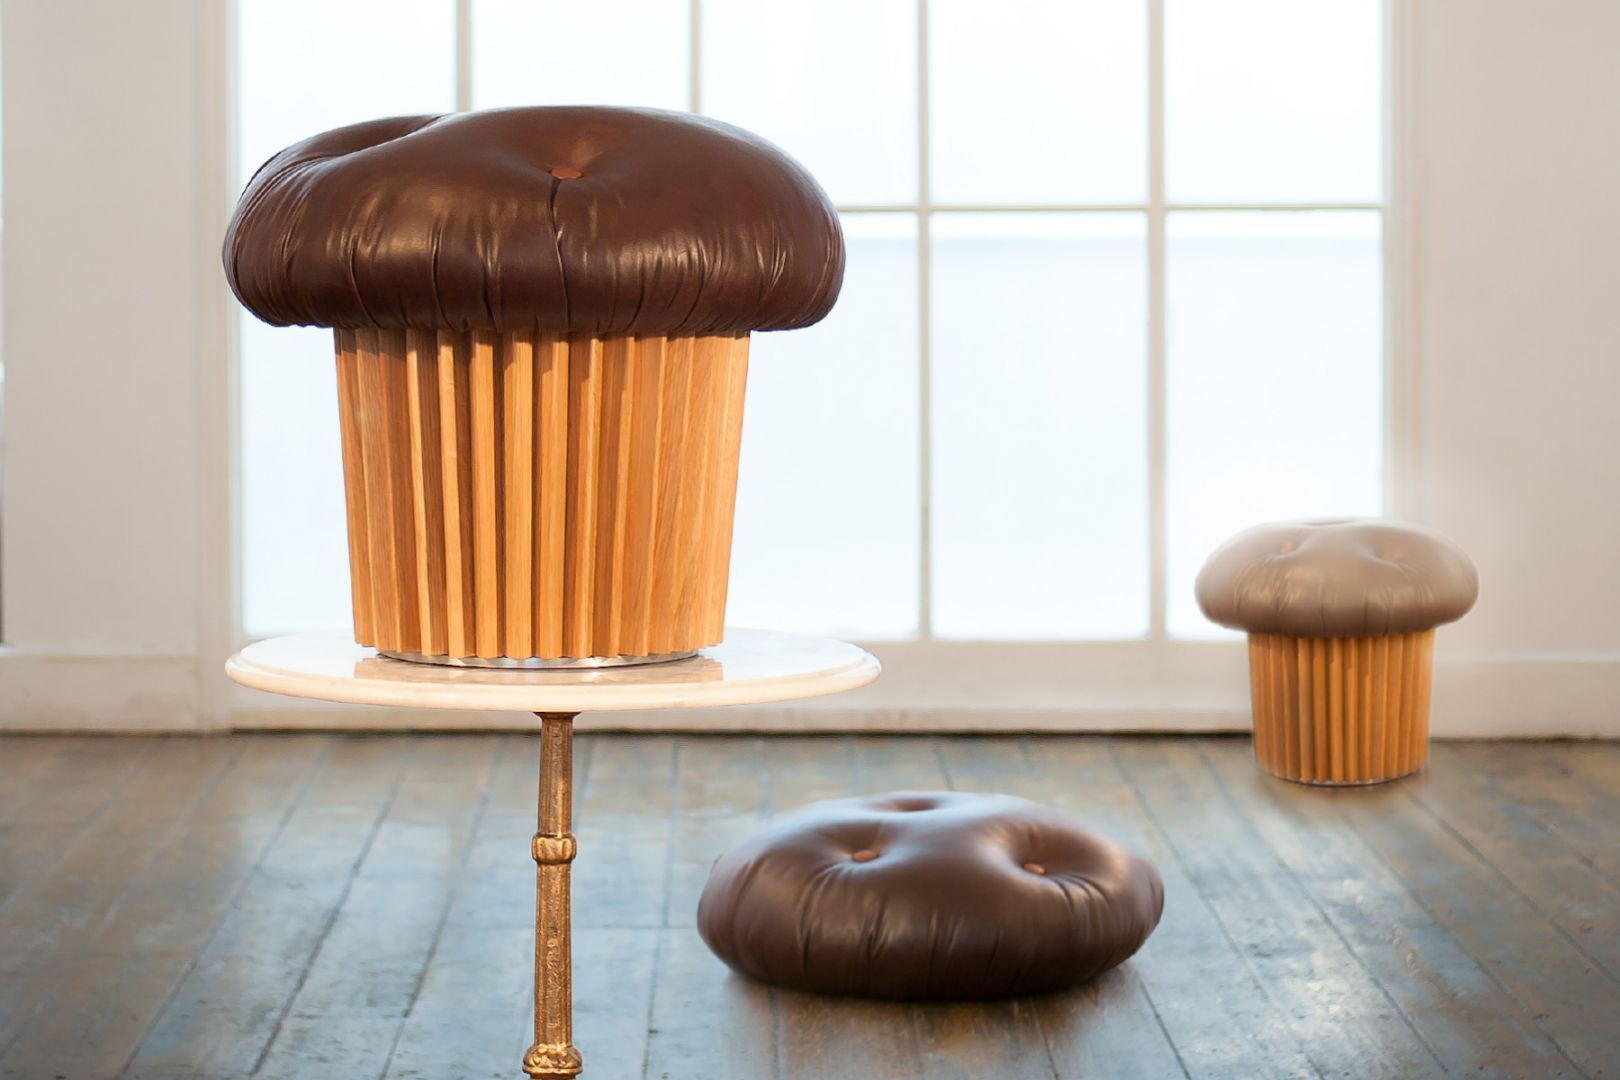 Puf w kształcie muffinki zaprojektowana przez Matteo Bianchi to świetny element dekoracyjny. Fot. Matteo Bianchi 